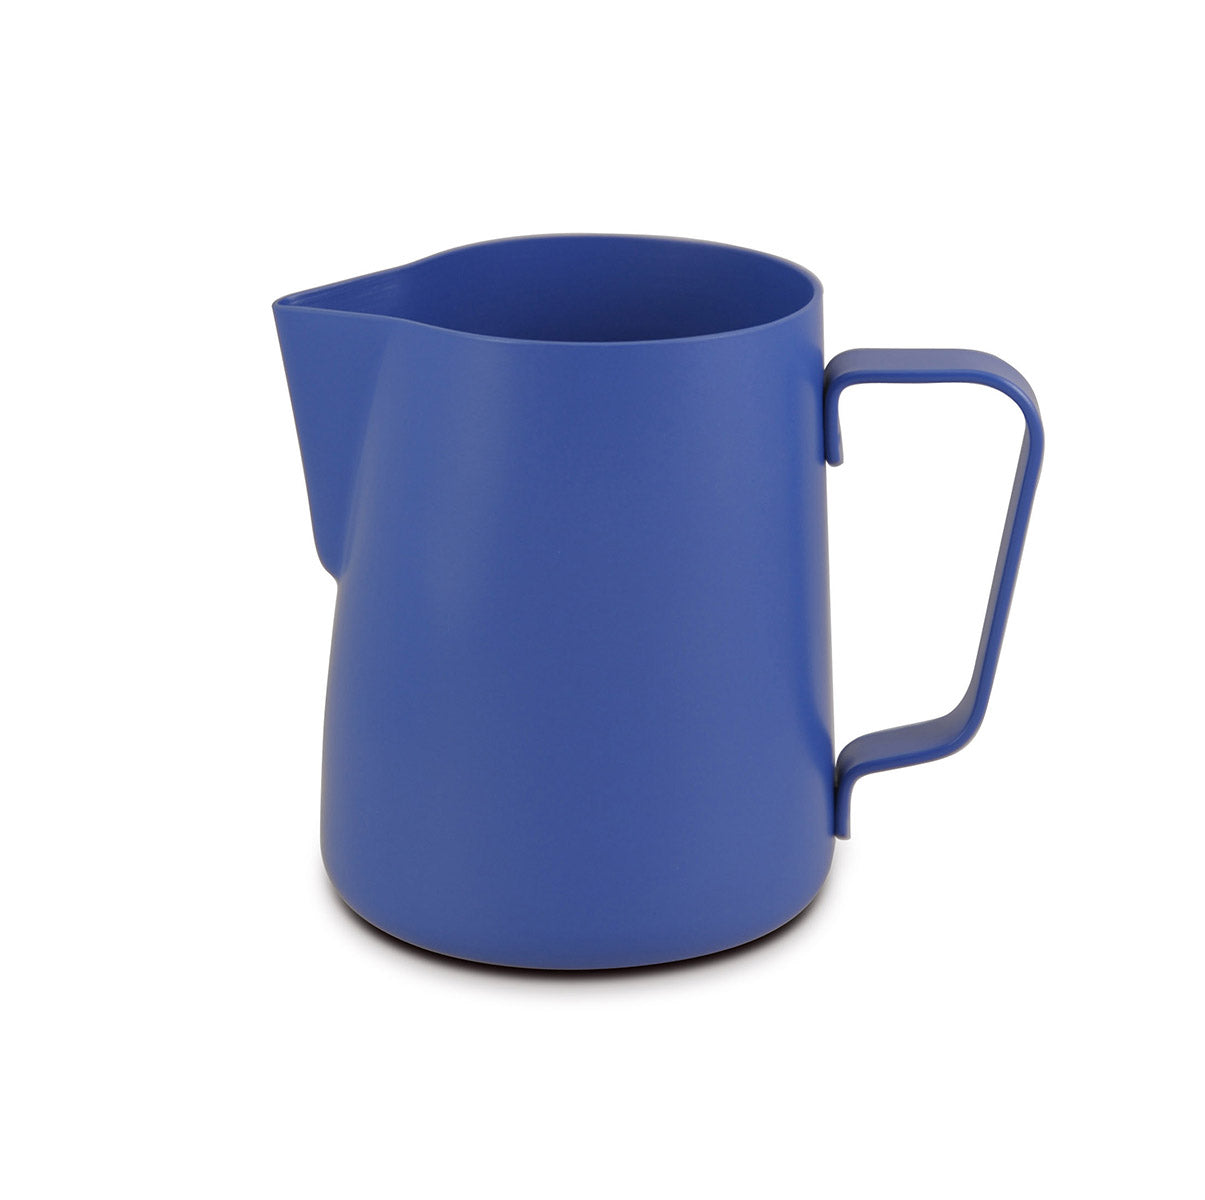 Lattiera per cappuccino in acciaio inox | Colore blu | Capacità 360 ml